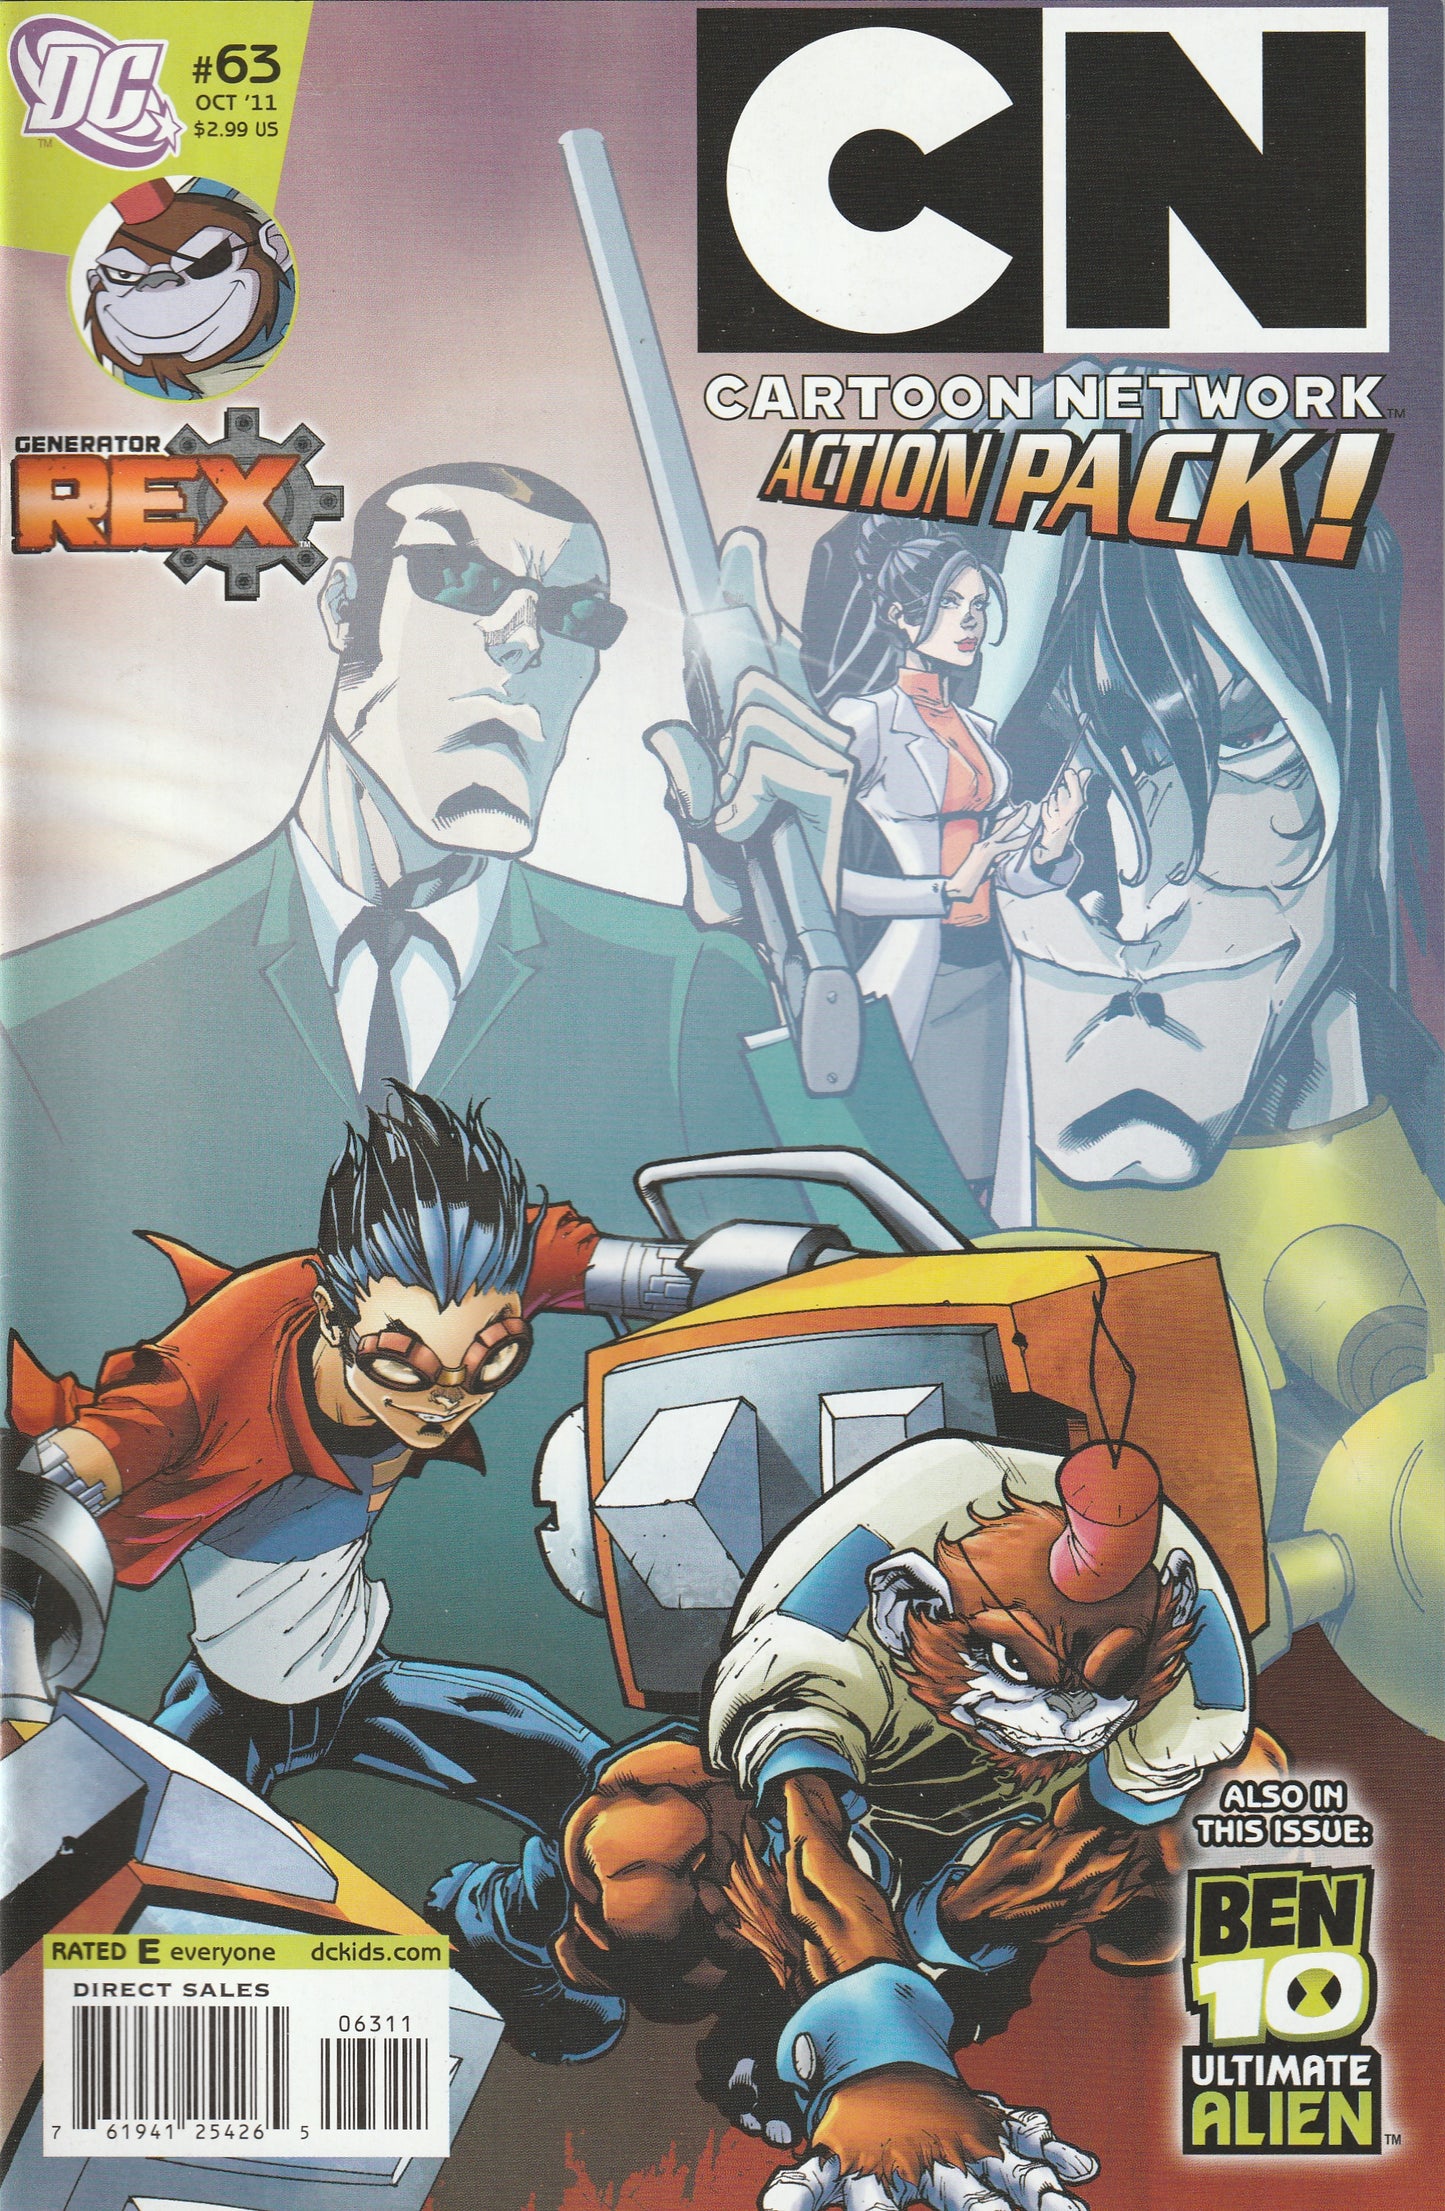 Cartoon Network Action Pack #63 (2011) - Generator Rex, Ben 10 Ultimate Alien